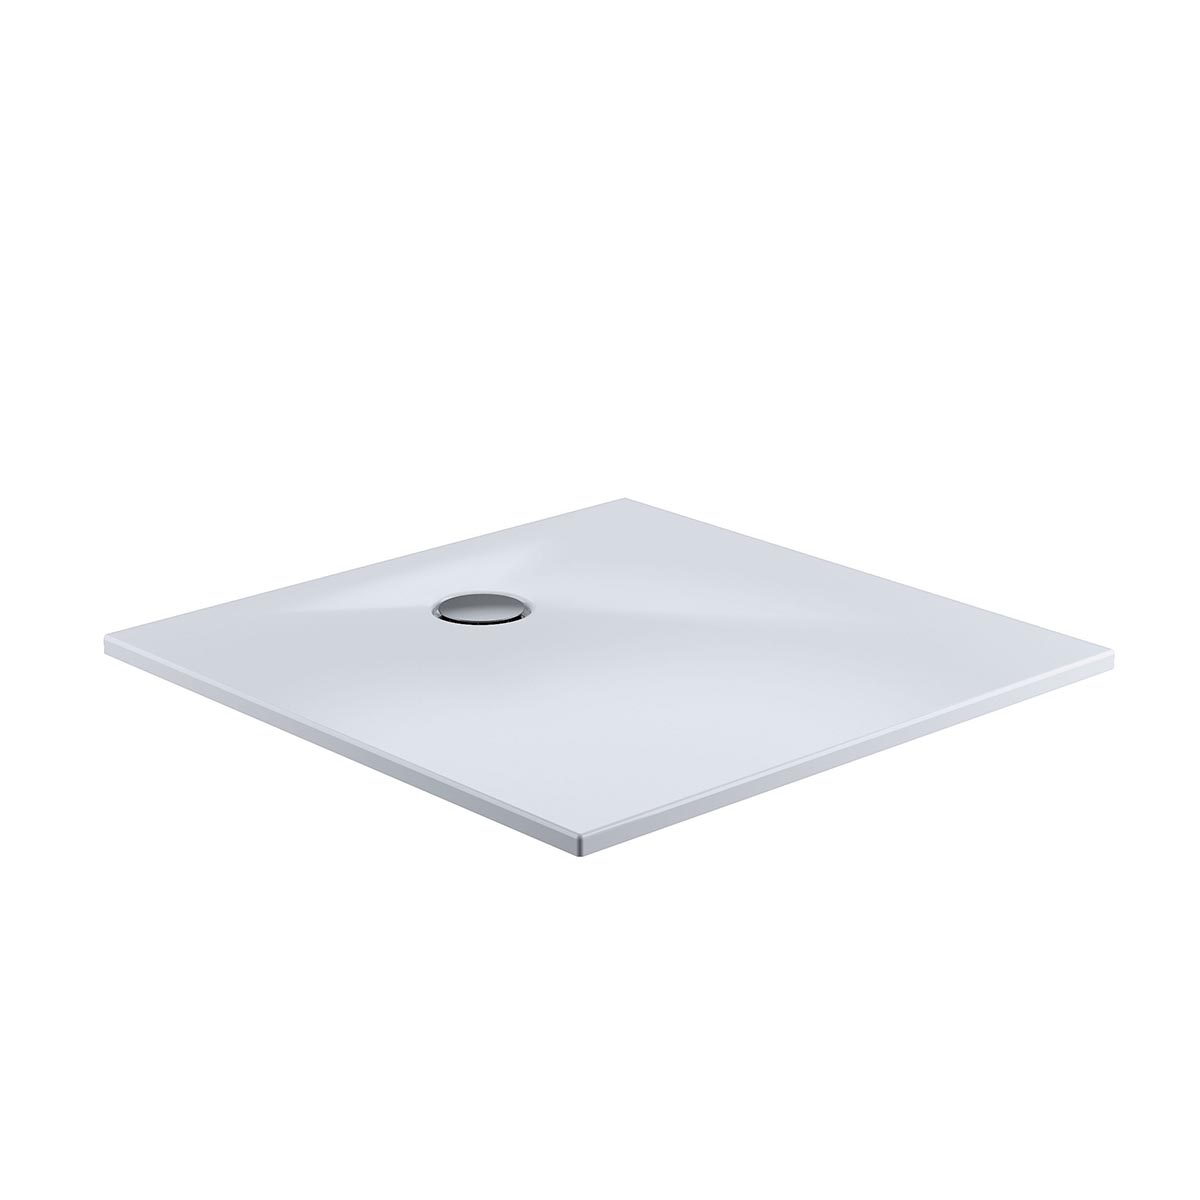 HSK Marmor-Polymer Quadrat Duschwanne plan-Weiß-90 x 90 cm-mit AntiSlip-Beschichtung-mit Aquaproof-Dichtset